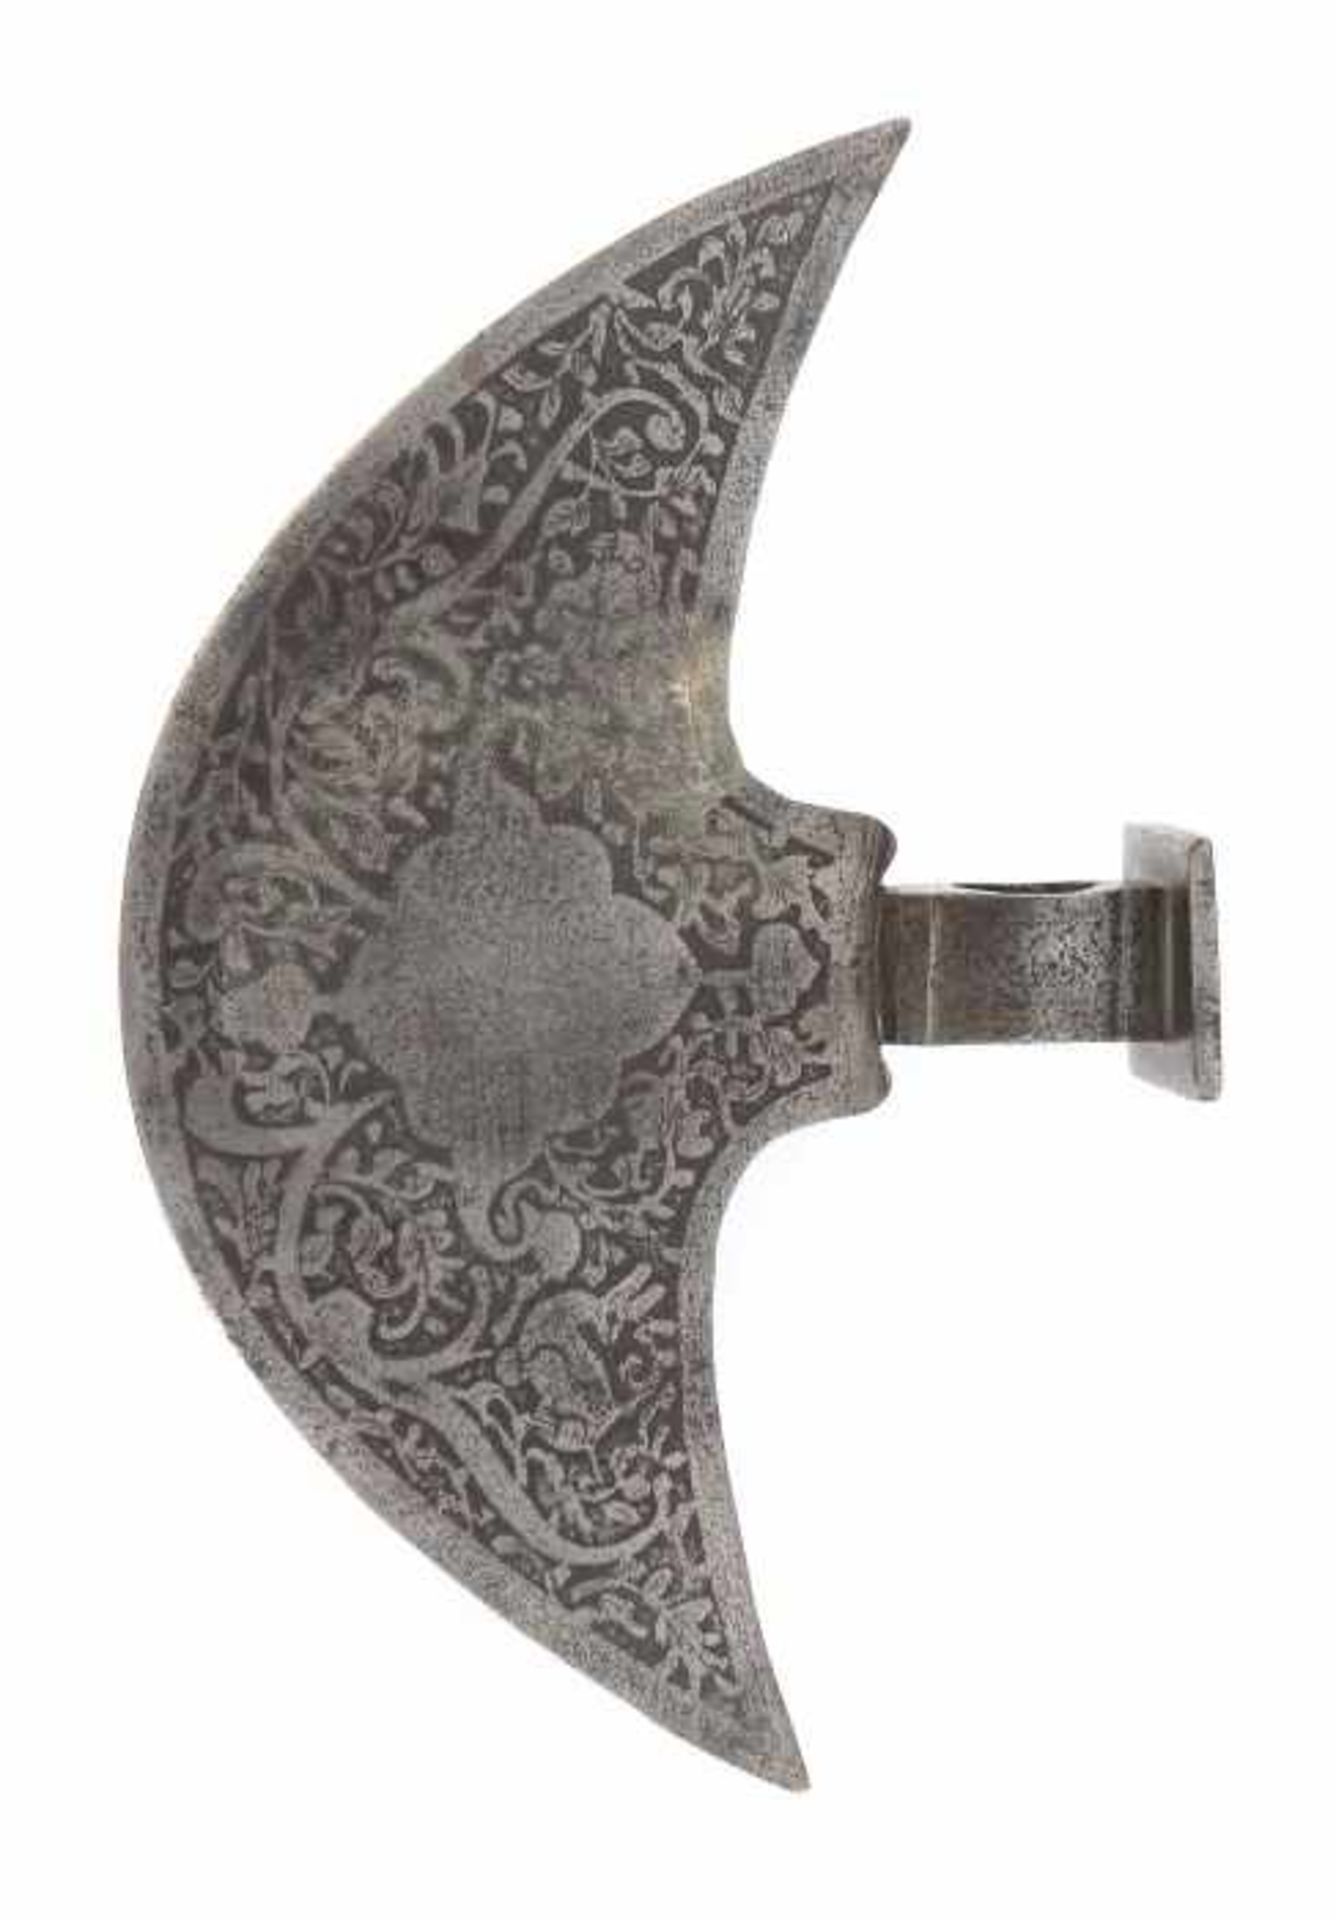 Persische Axt-Klinge19. Jh., mondsichelförmige Eisenklinge beidseitig flächendeckend verziert mit